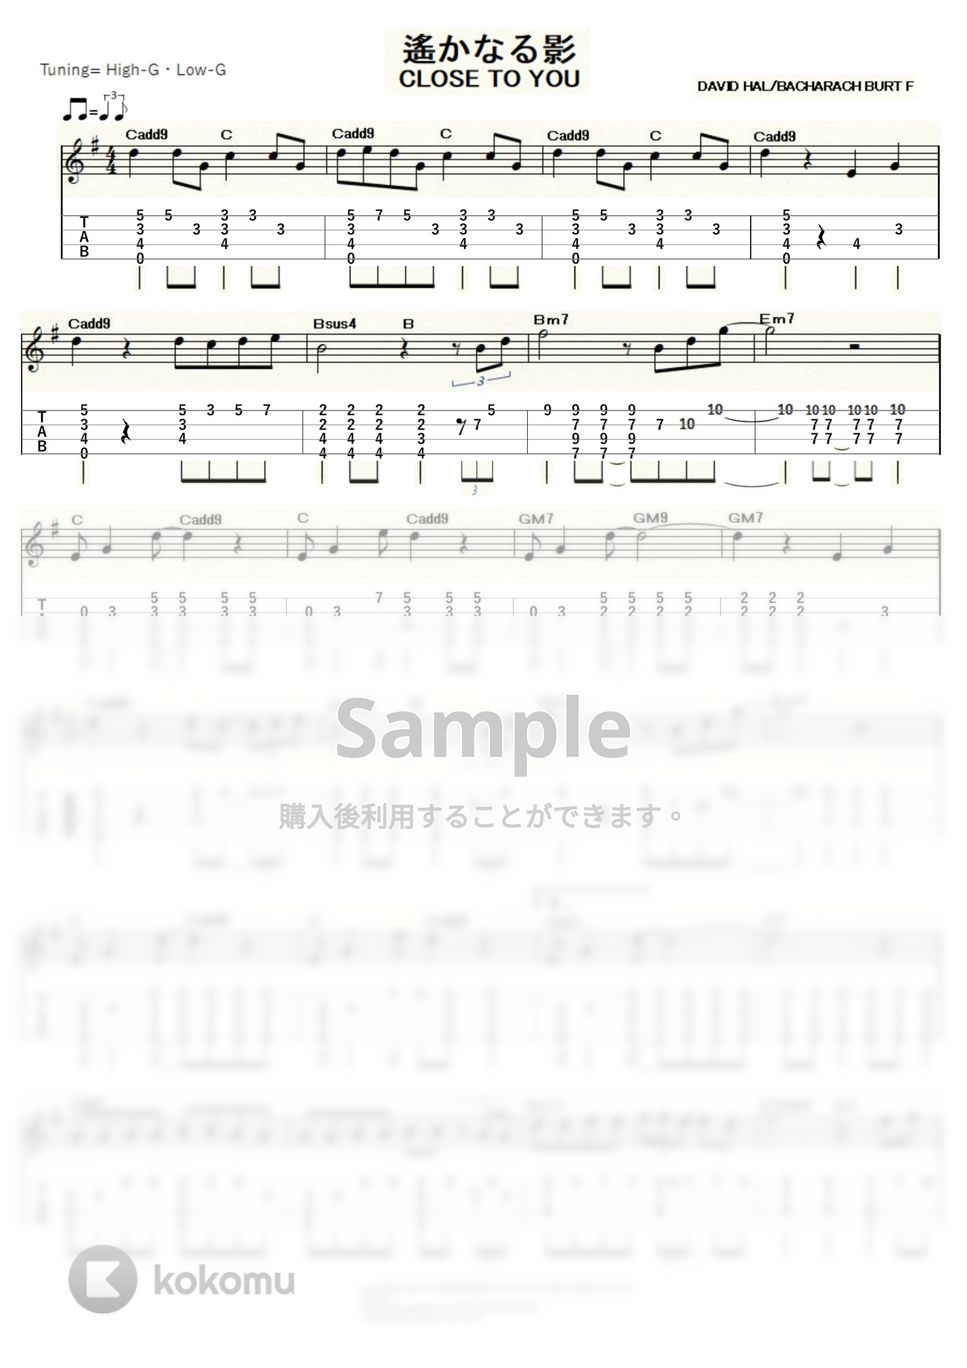 カーペンターズ - 遙かなる影～CLOSE TO YOU～ (ｳｸﾚﾚｿﾛ / High-G・Low-G / 中級～上級) by ukulelepapa